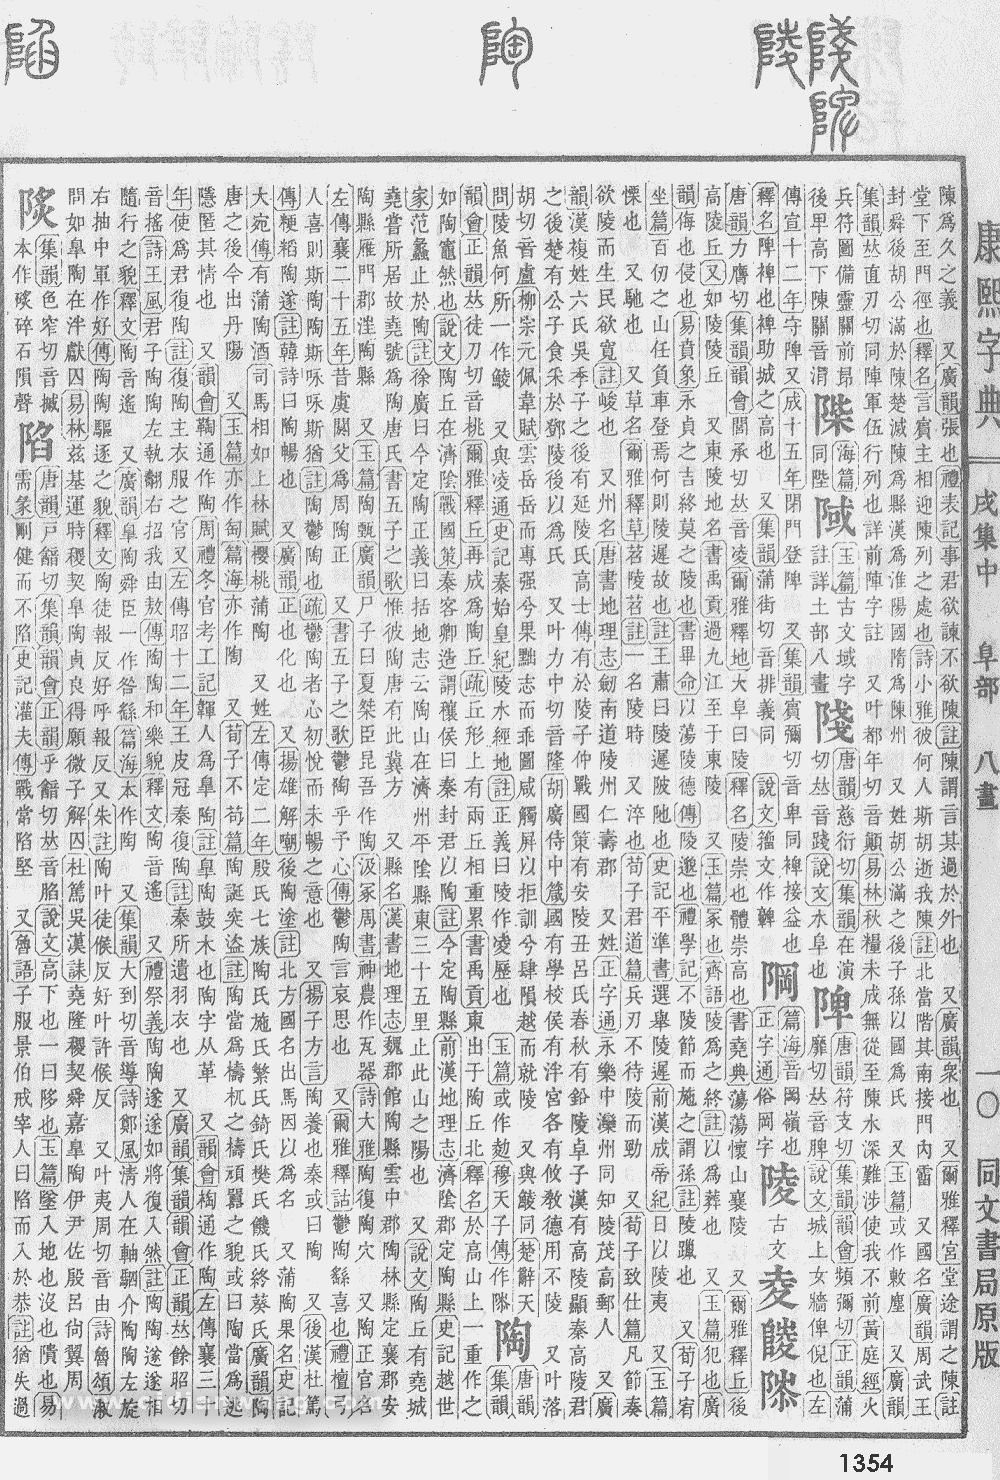 康熙字典掃描版第1354頁